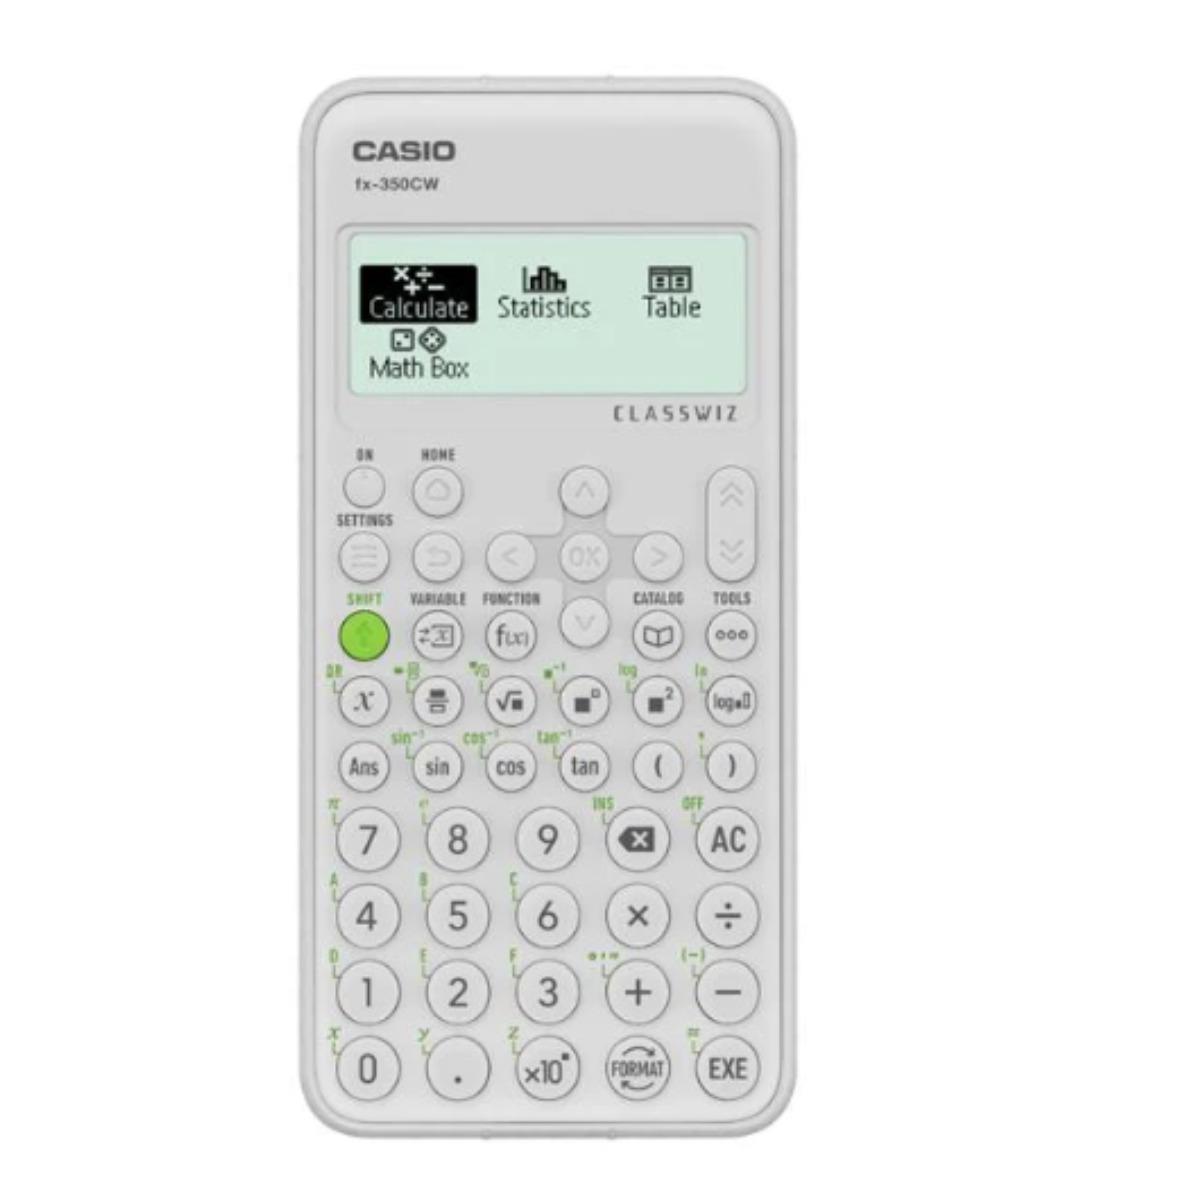 Casio Calcolatrice casio fx 350 cw 290 funzioni 48337 4549526615733